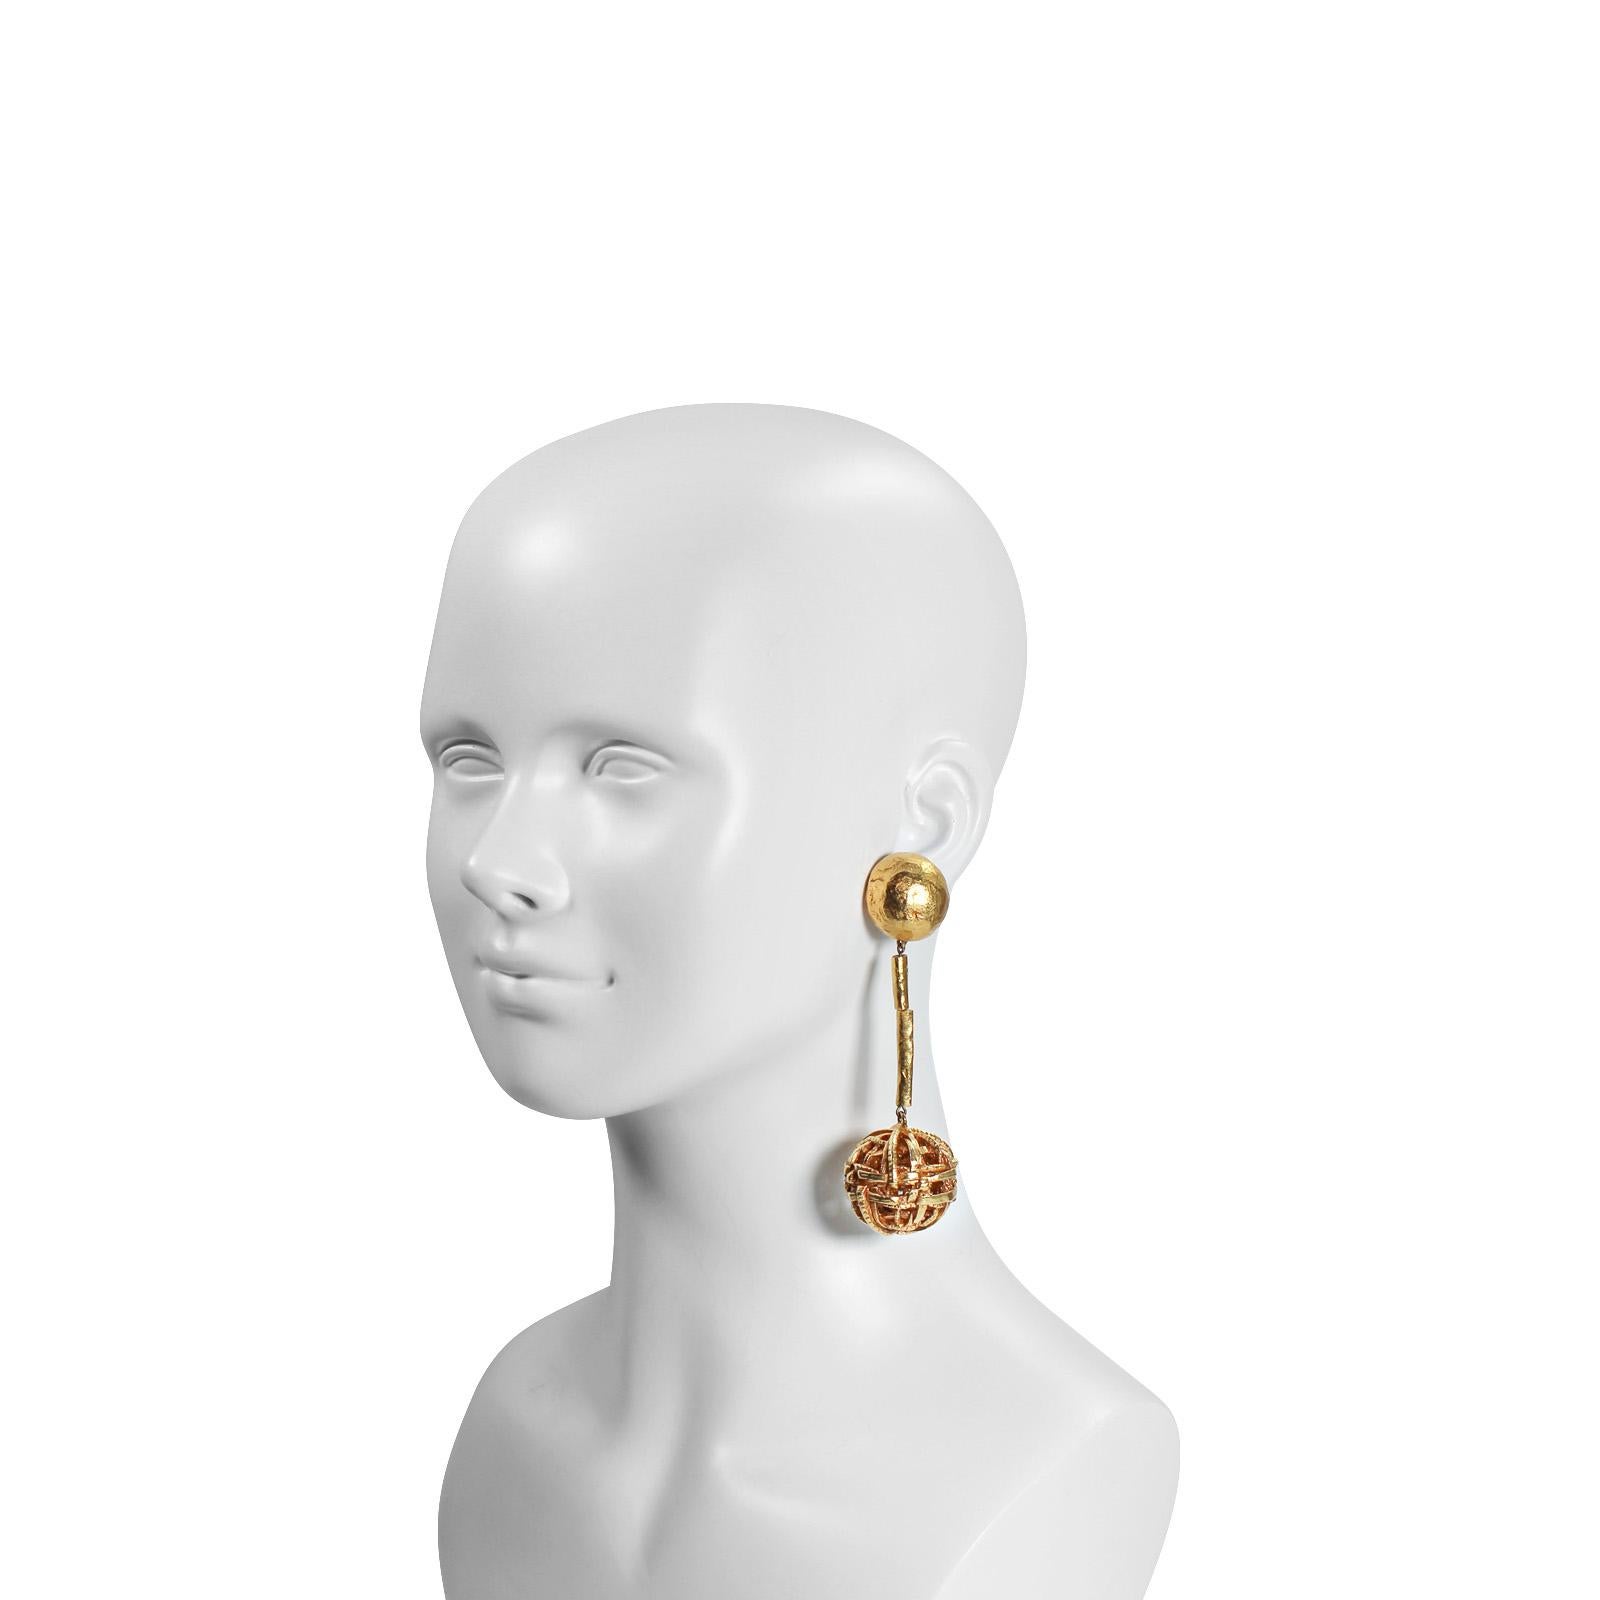 Boucle d'oreille Vintage Christian Lacroix en ton or avec 2 barres de métal qui peuvent être manipulées avec une boule attachée à l'extrémité.  Alors, Lacroix !
Ils sont très chics. Ils ont juste une apparence sans cri, mais quand vous les voyez sur